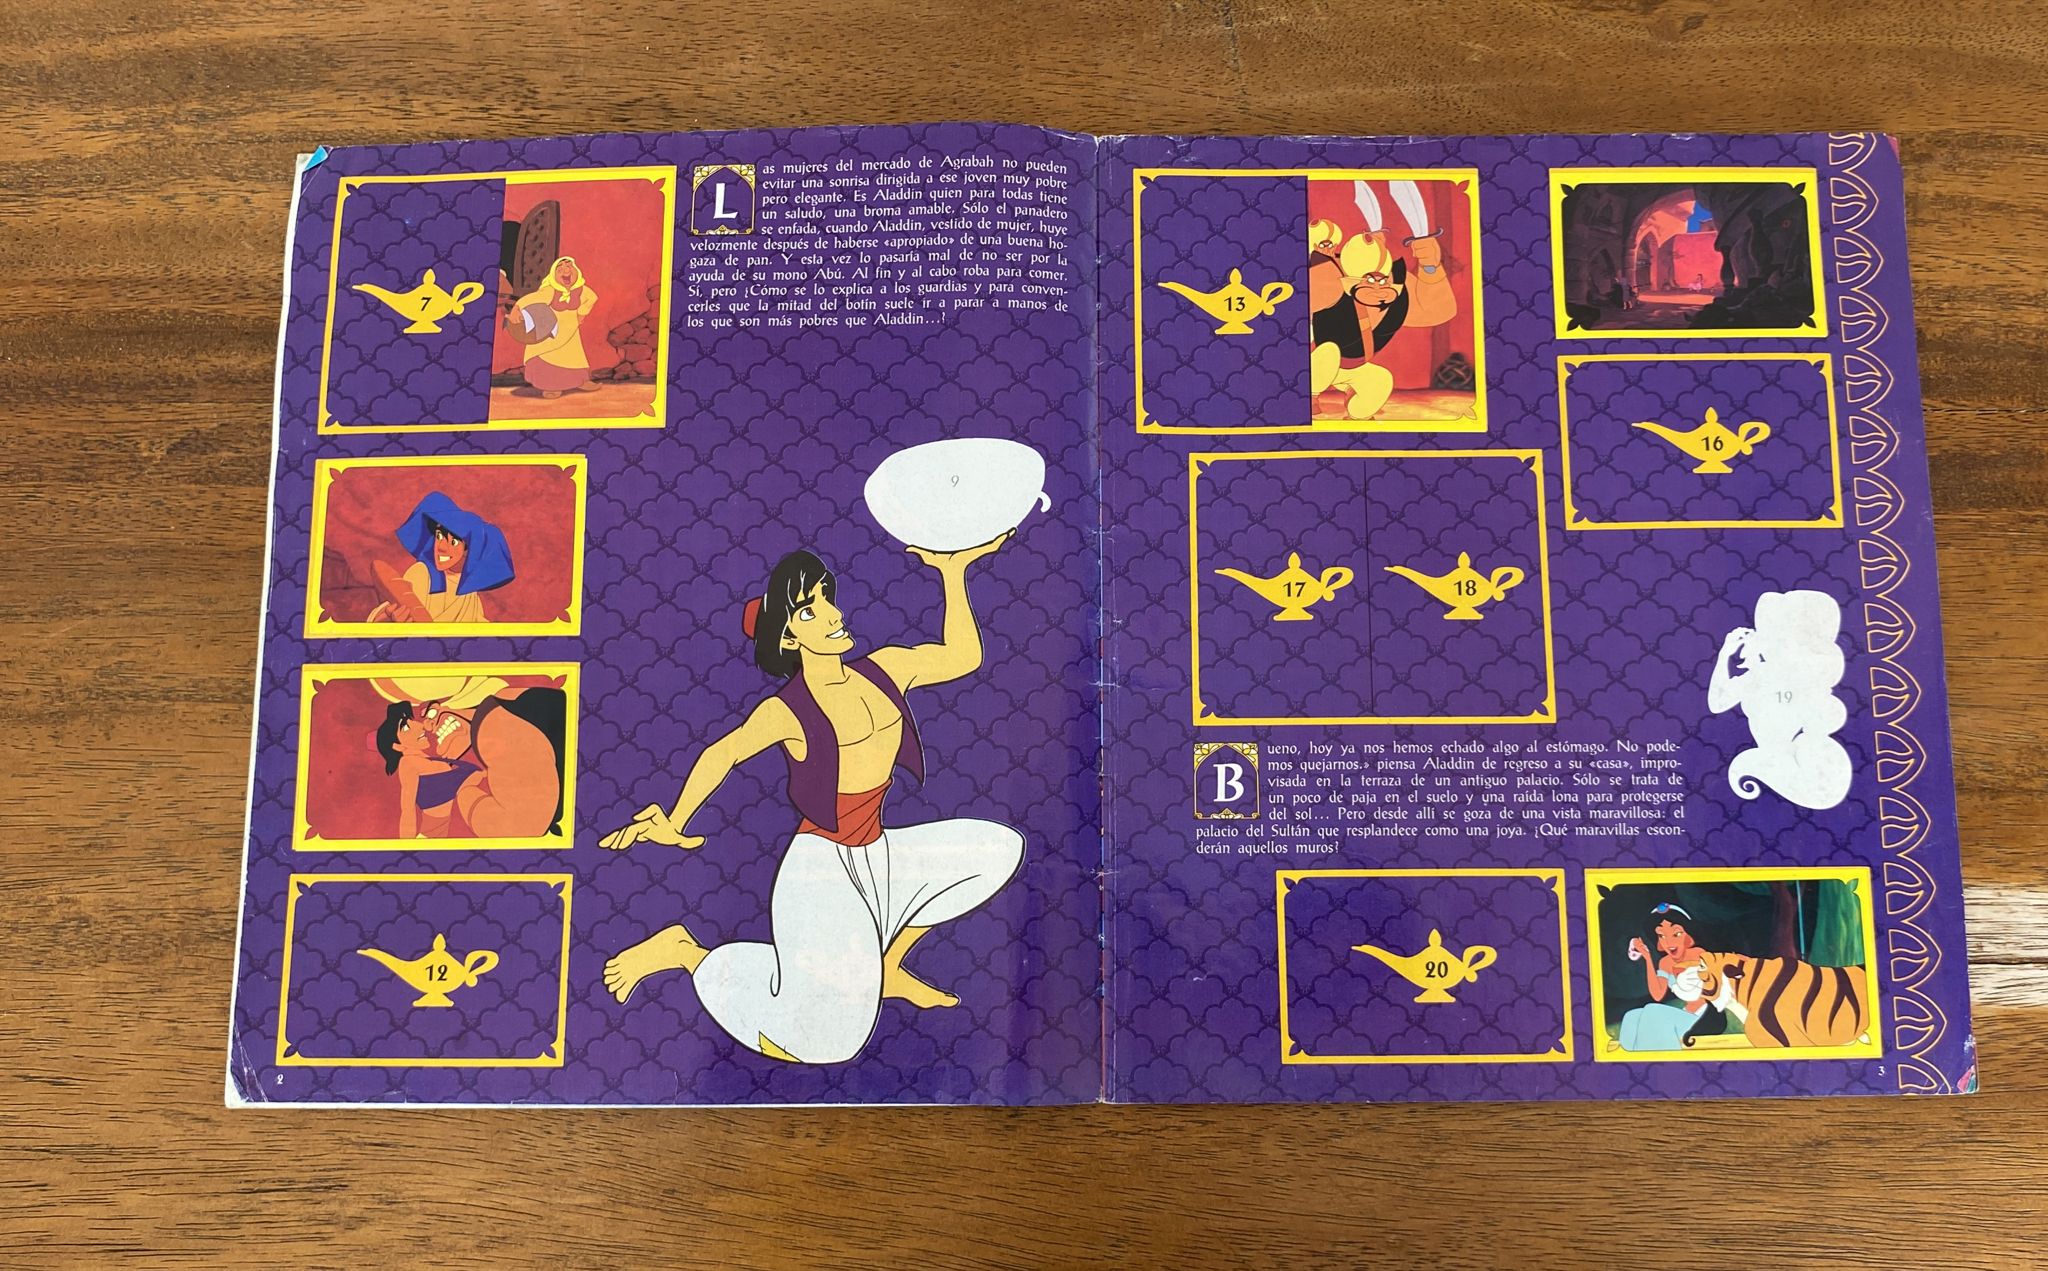 Álbum Aladino de Disney. Panini. Contiene 89 cromos y 16 pegatinas